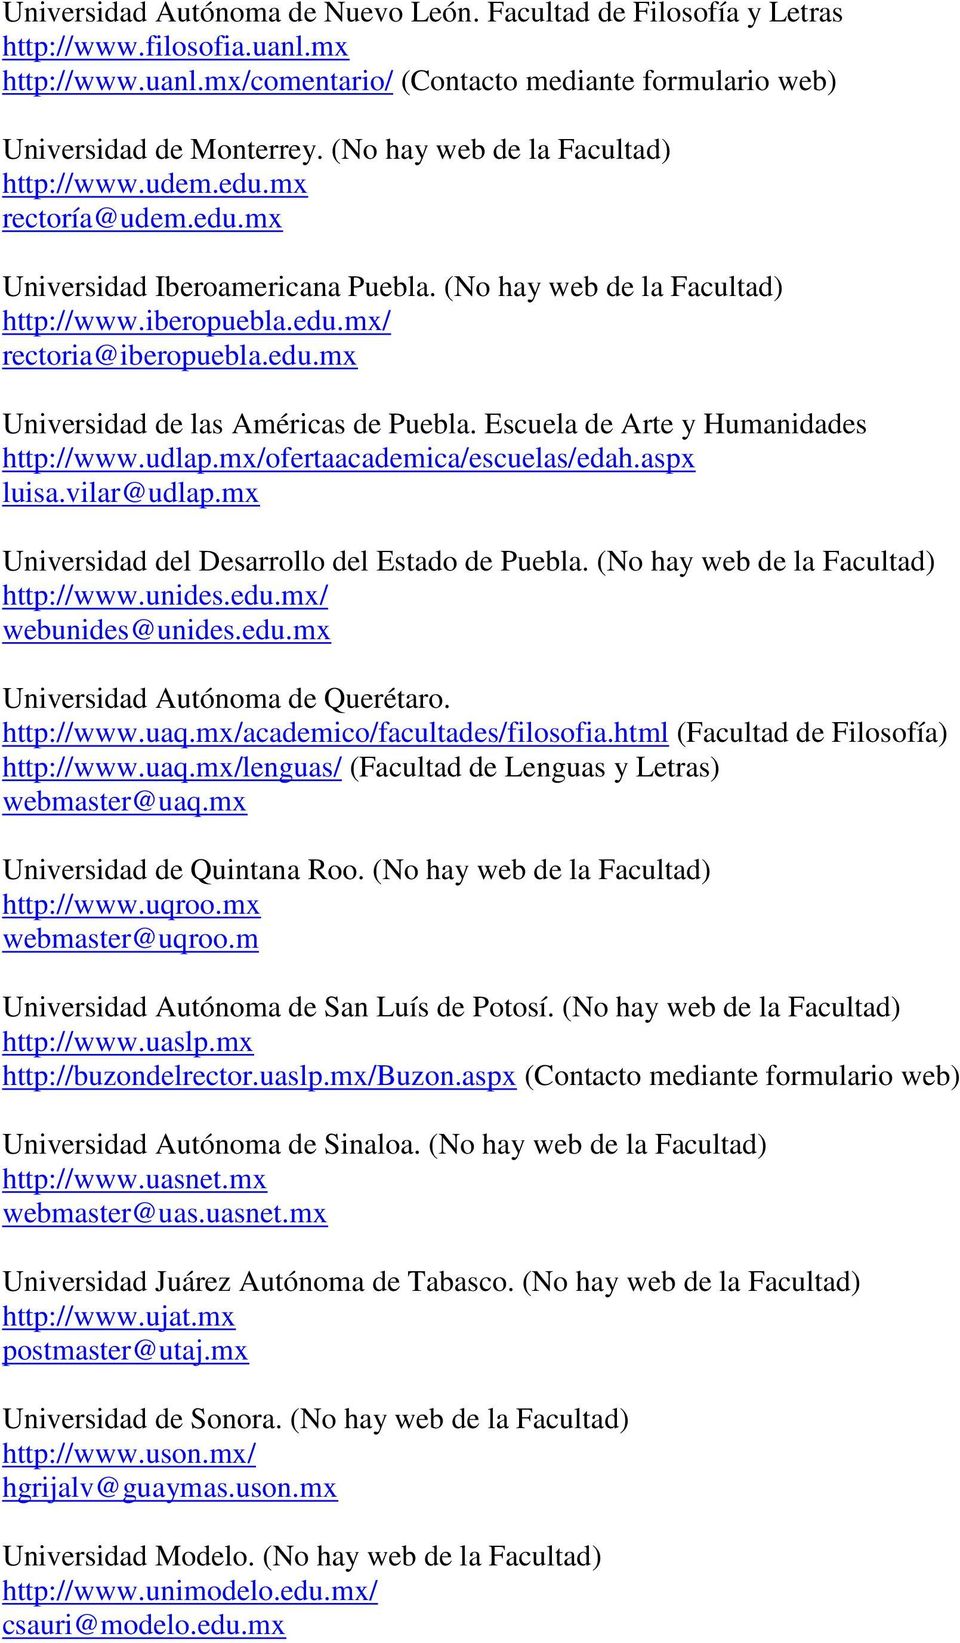 Escuela de Arte y Humanidades http://www.udlap.mx/ofertaacademica/escuelas/edah.aspx luisa.vilar@udlap.mx Universidad del Desarrollo del Estado de Puebla. (No hay web de la Facultad) http://www.